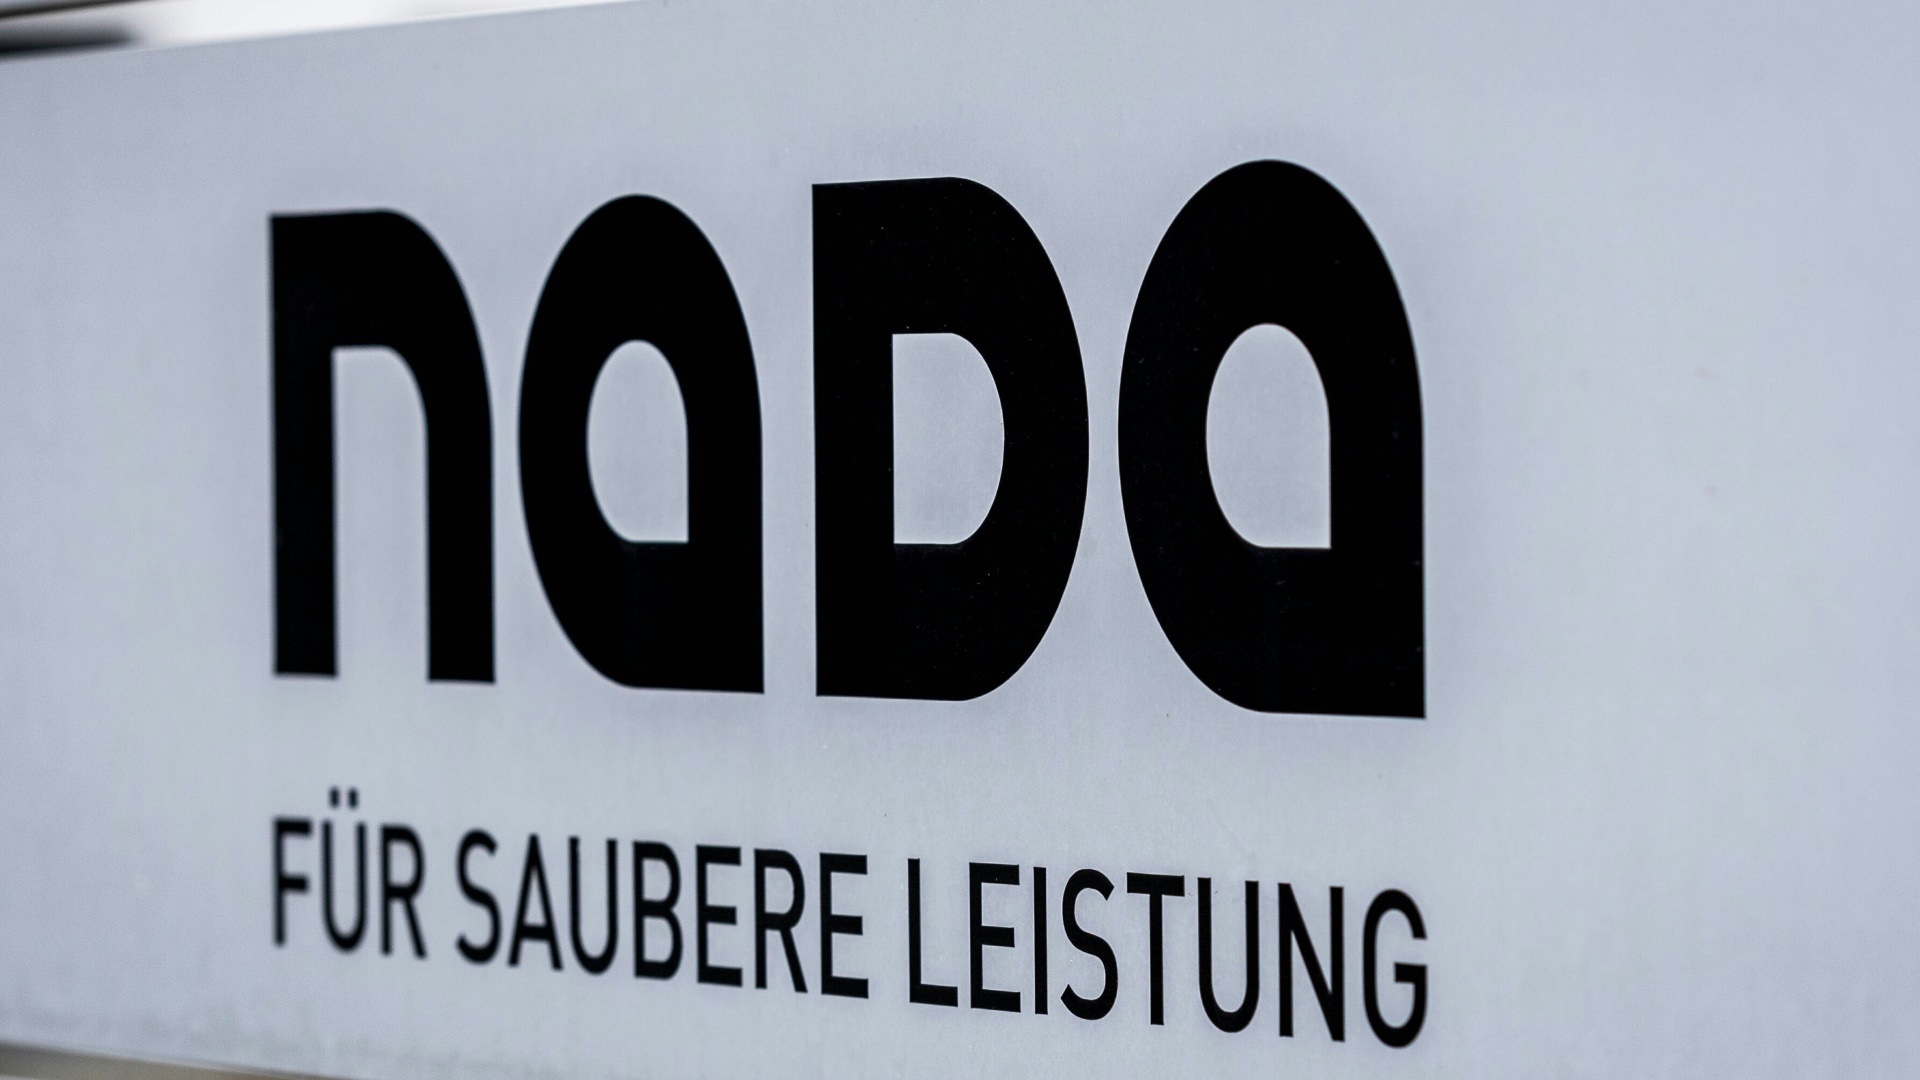 Nada startet eine Dopingpräventions-Kampagne